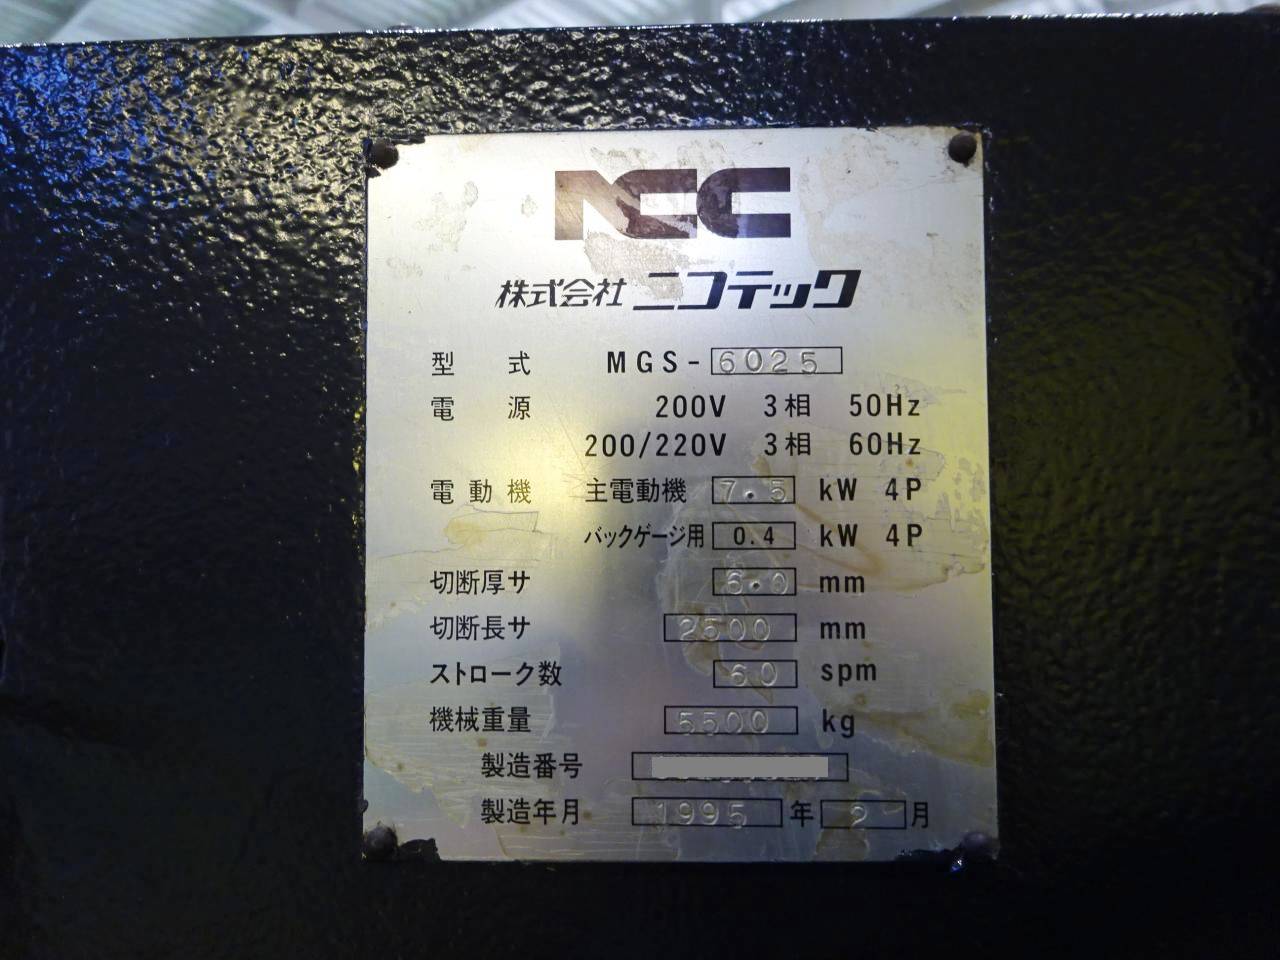 MGS-6025の銘板